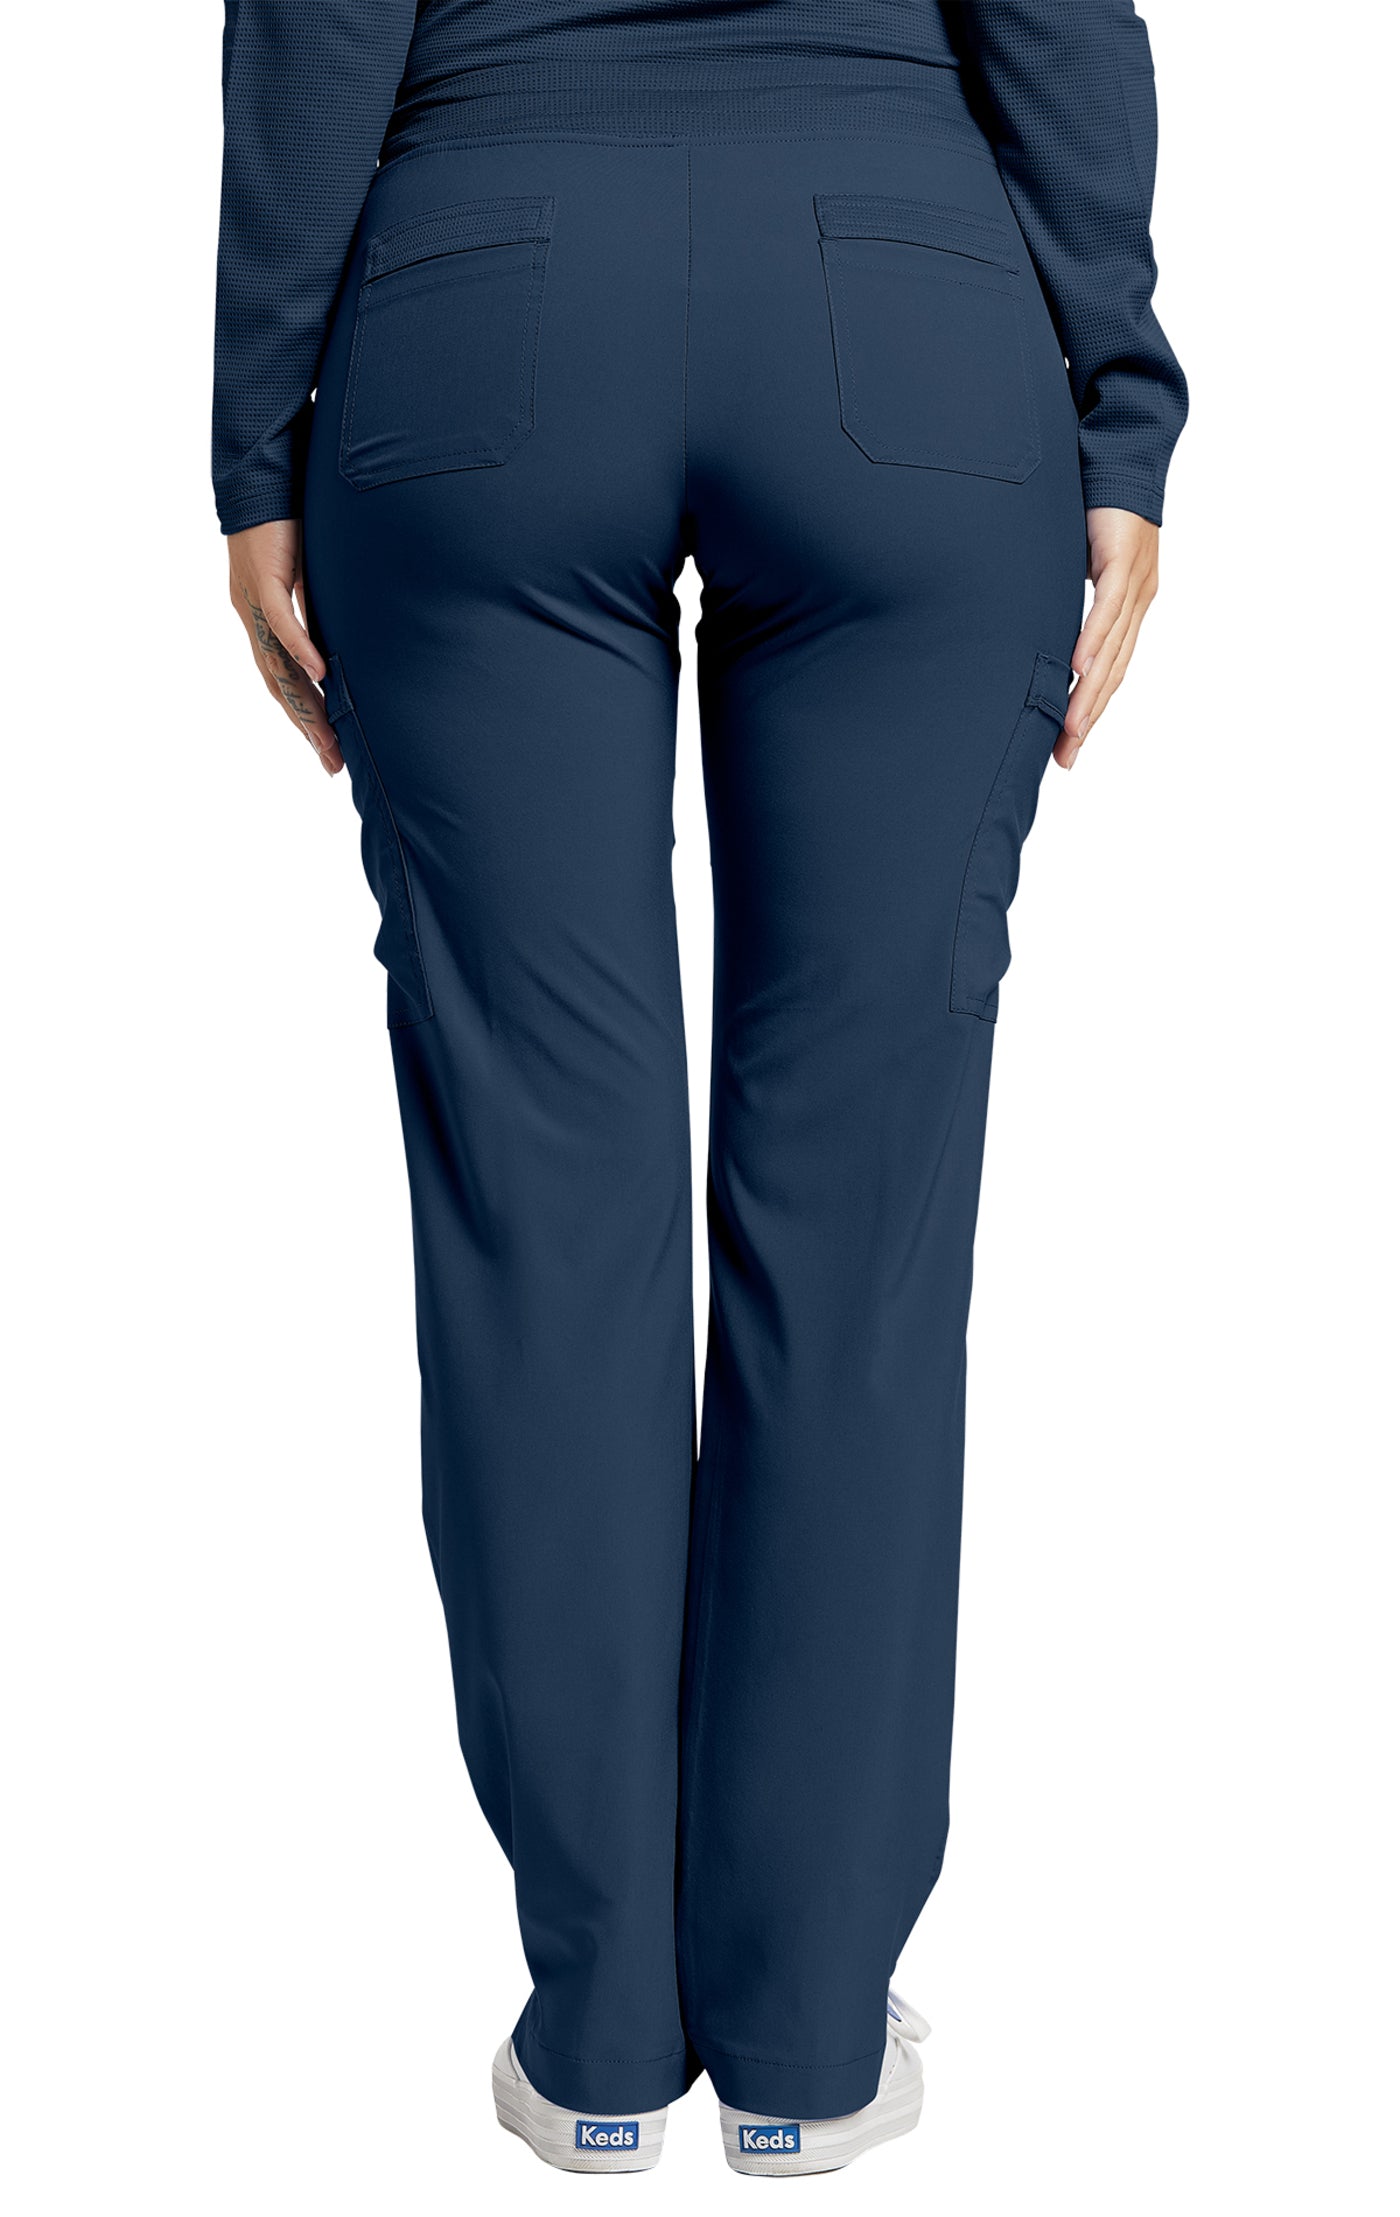 373T White Cross FIT Women's Tall Cargo Pants – Scrubs4U